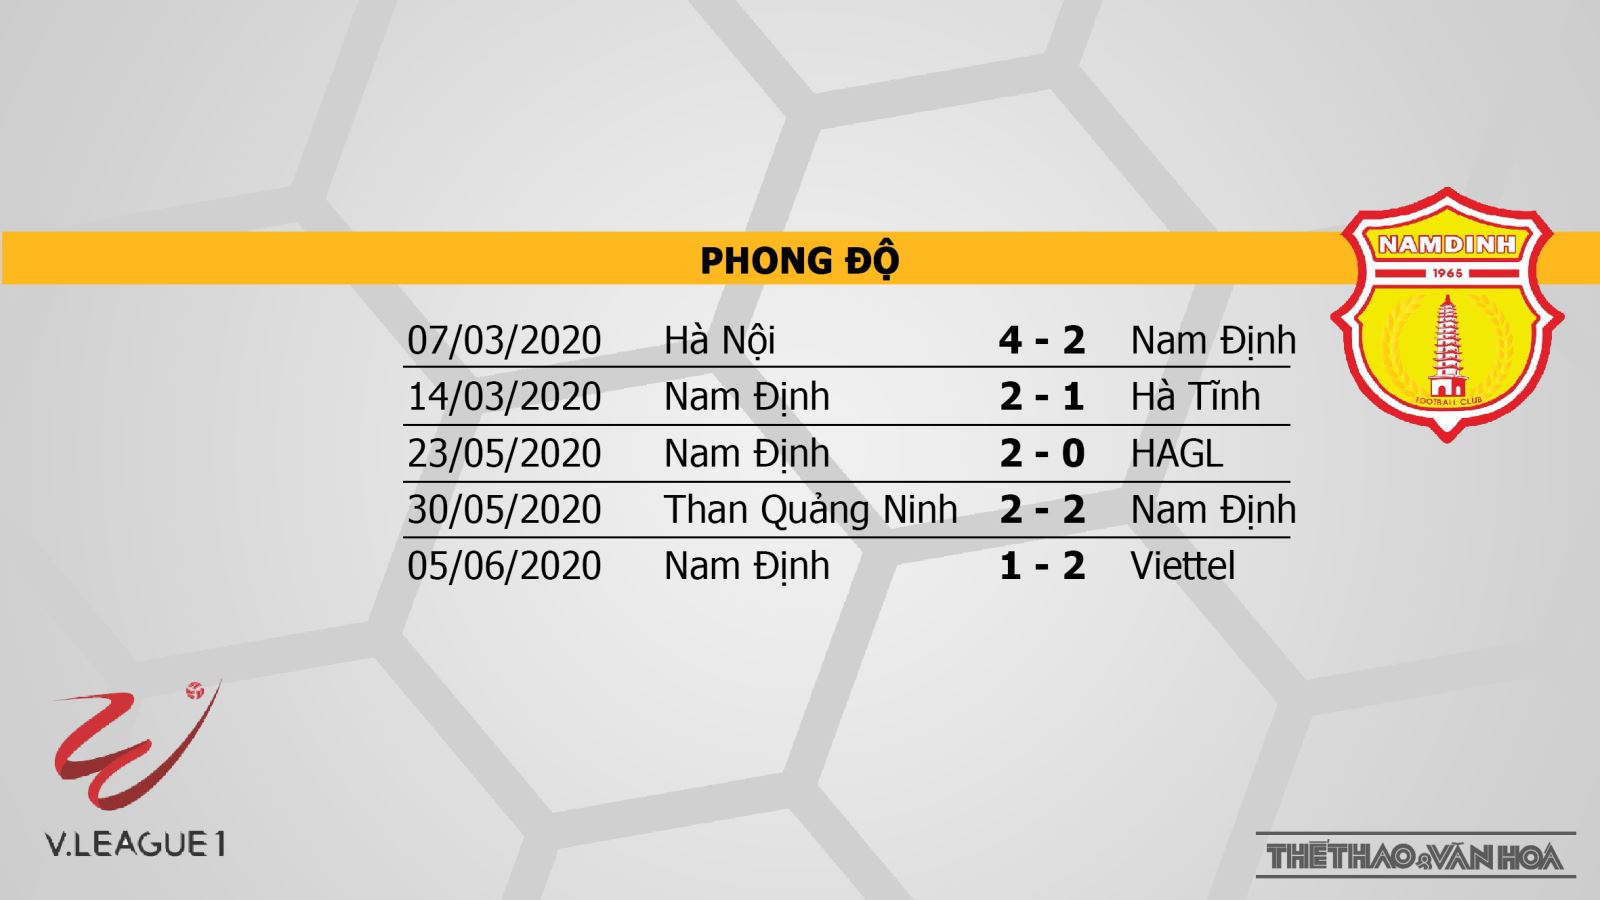 HAGL vs Nam Định, kèo bóng đá, HAGL, Nam Định, bóng đá, bong da, nhận định HAGL vs Nam Định, bóng đá hôm nay, V-League